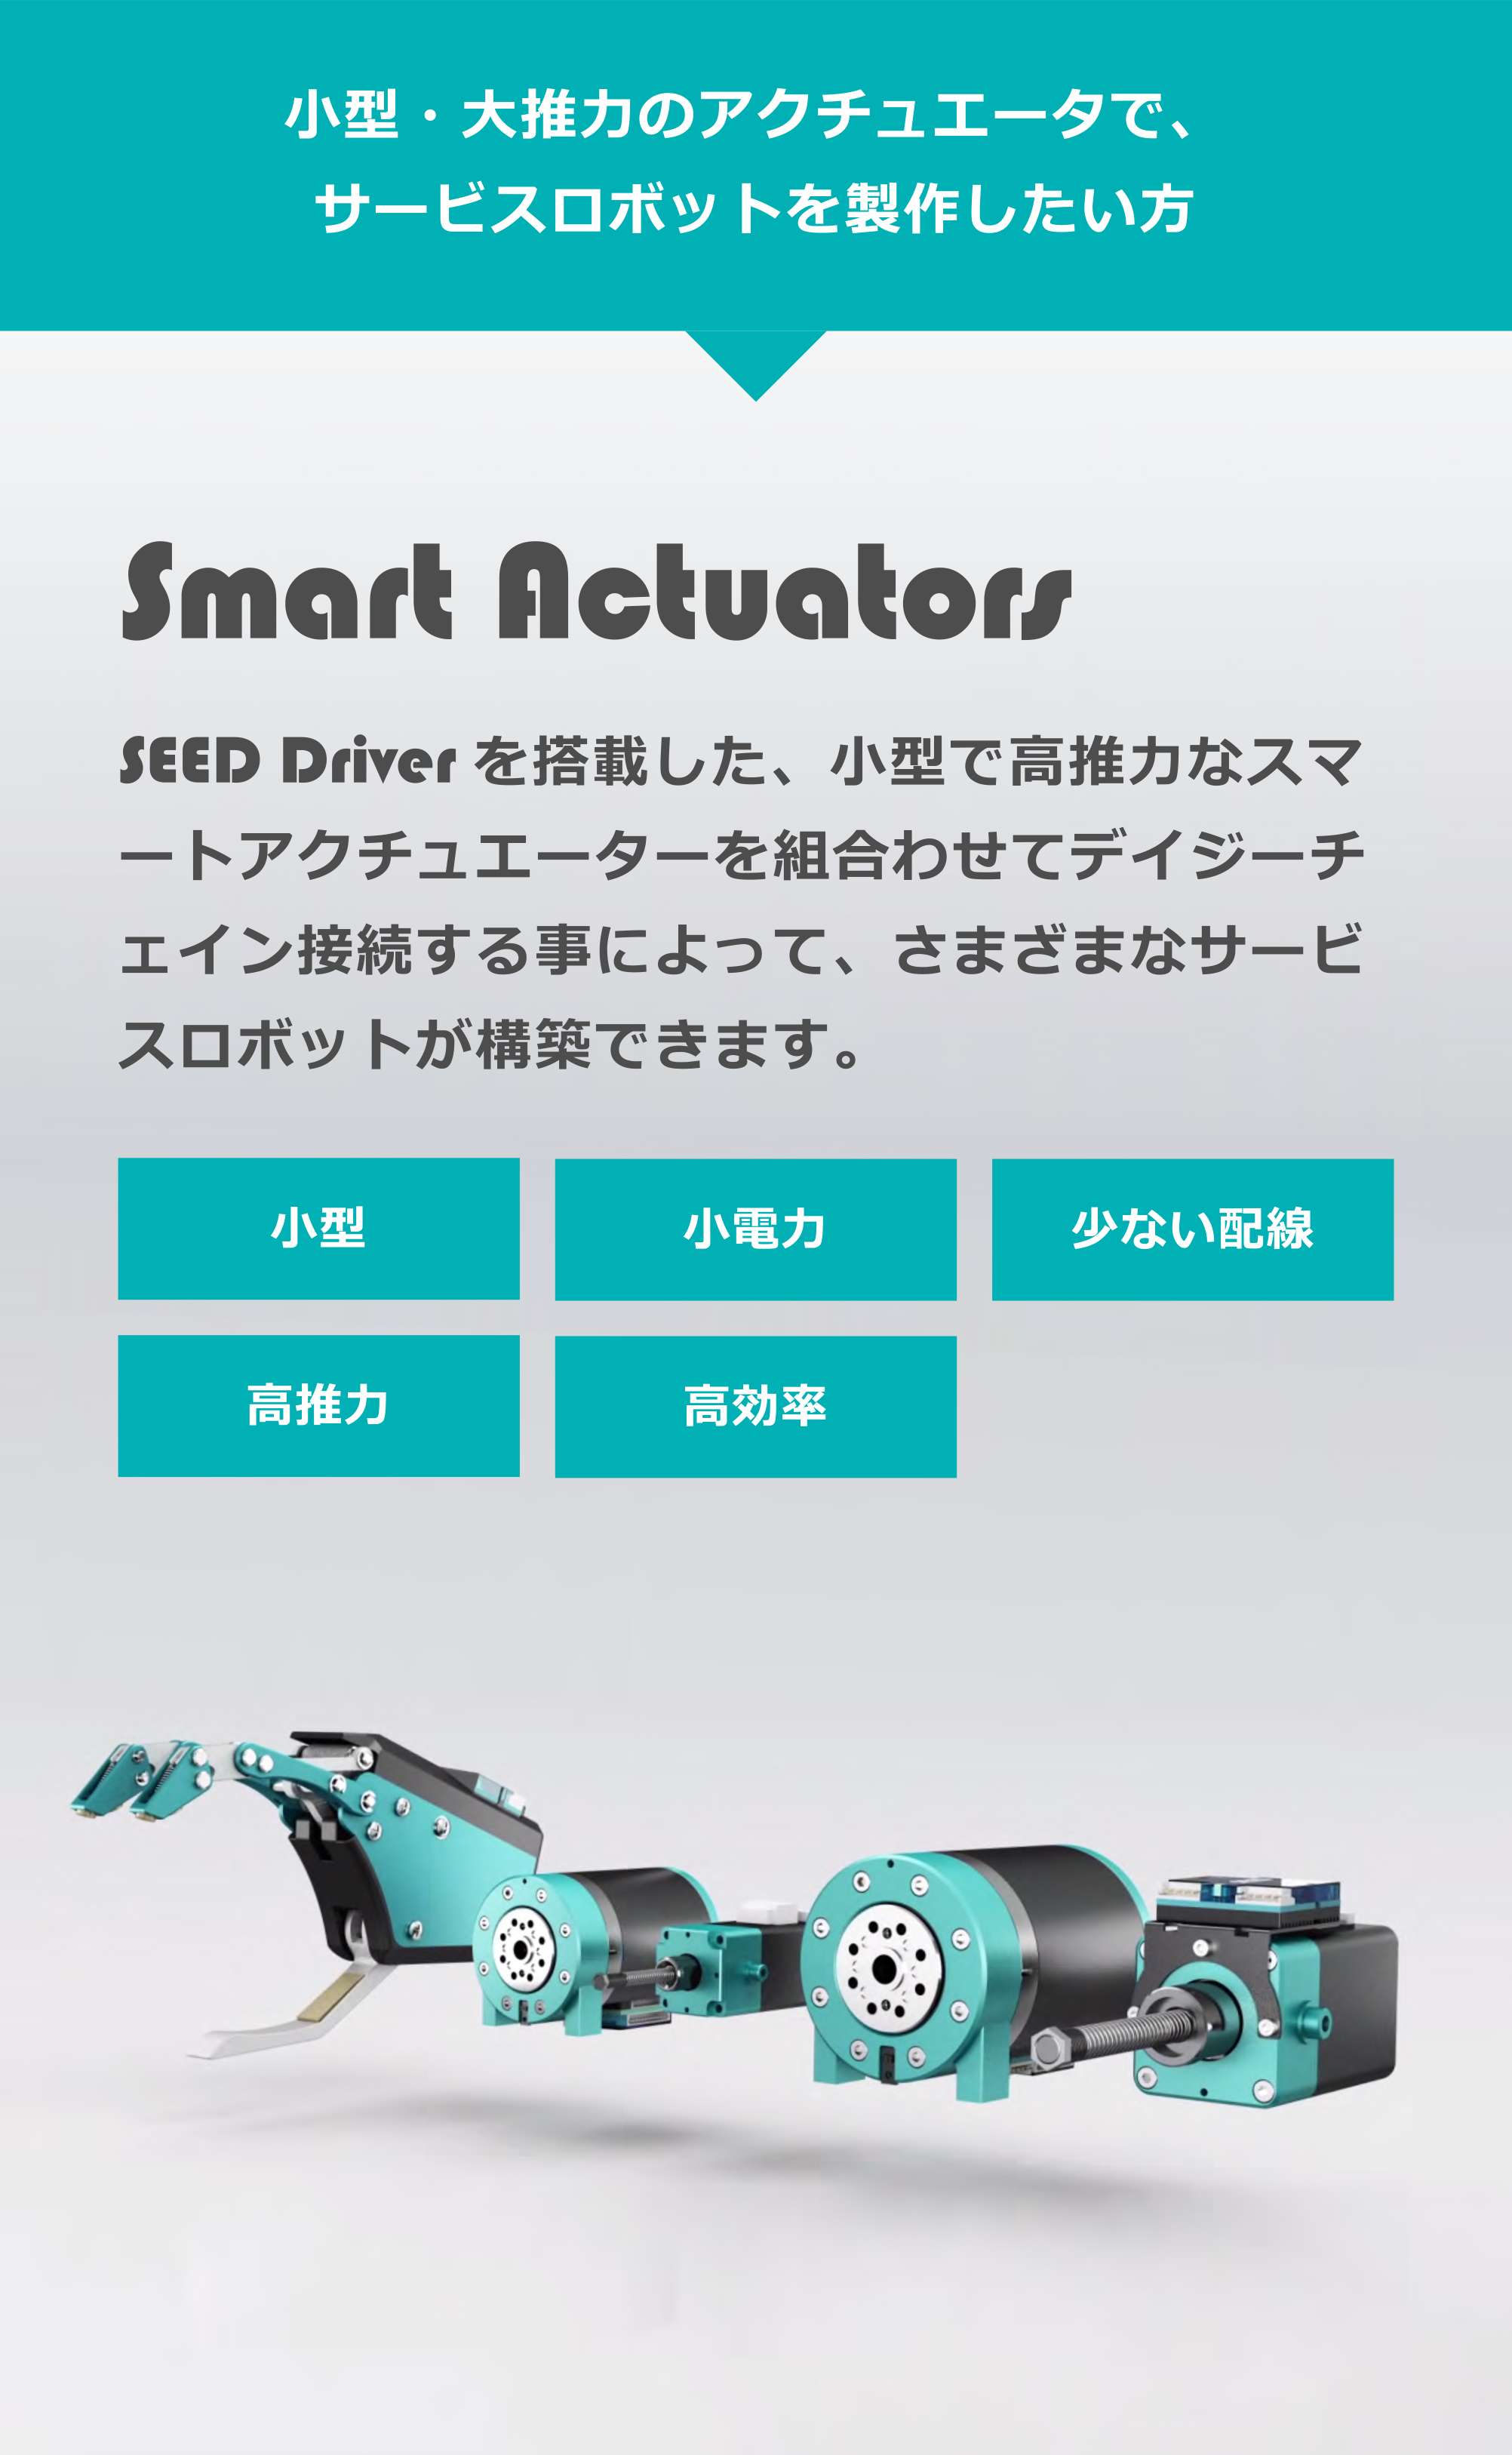 Smart Actuators SEED Driverを搭載した、Smartなアクチュエーターで、さまざまなサービスロボットを構築